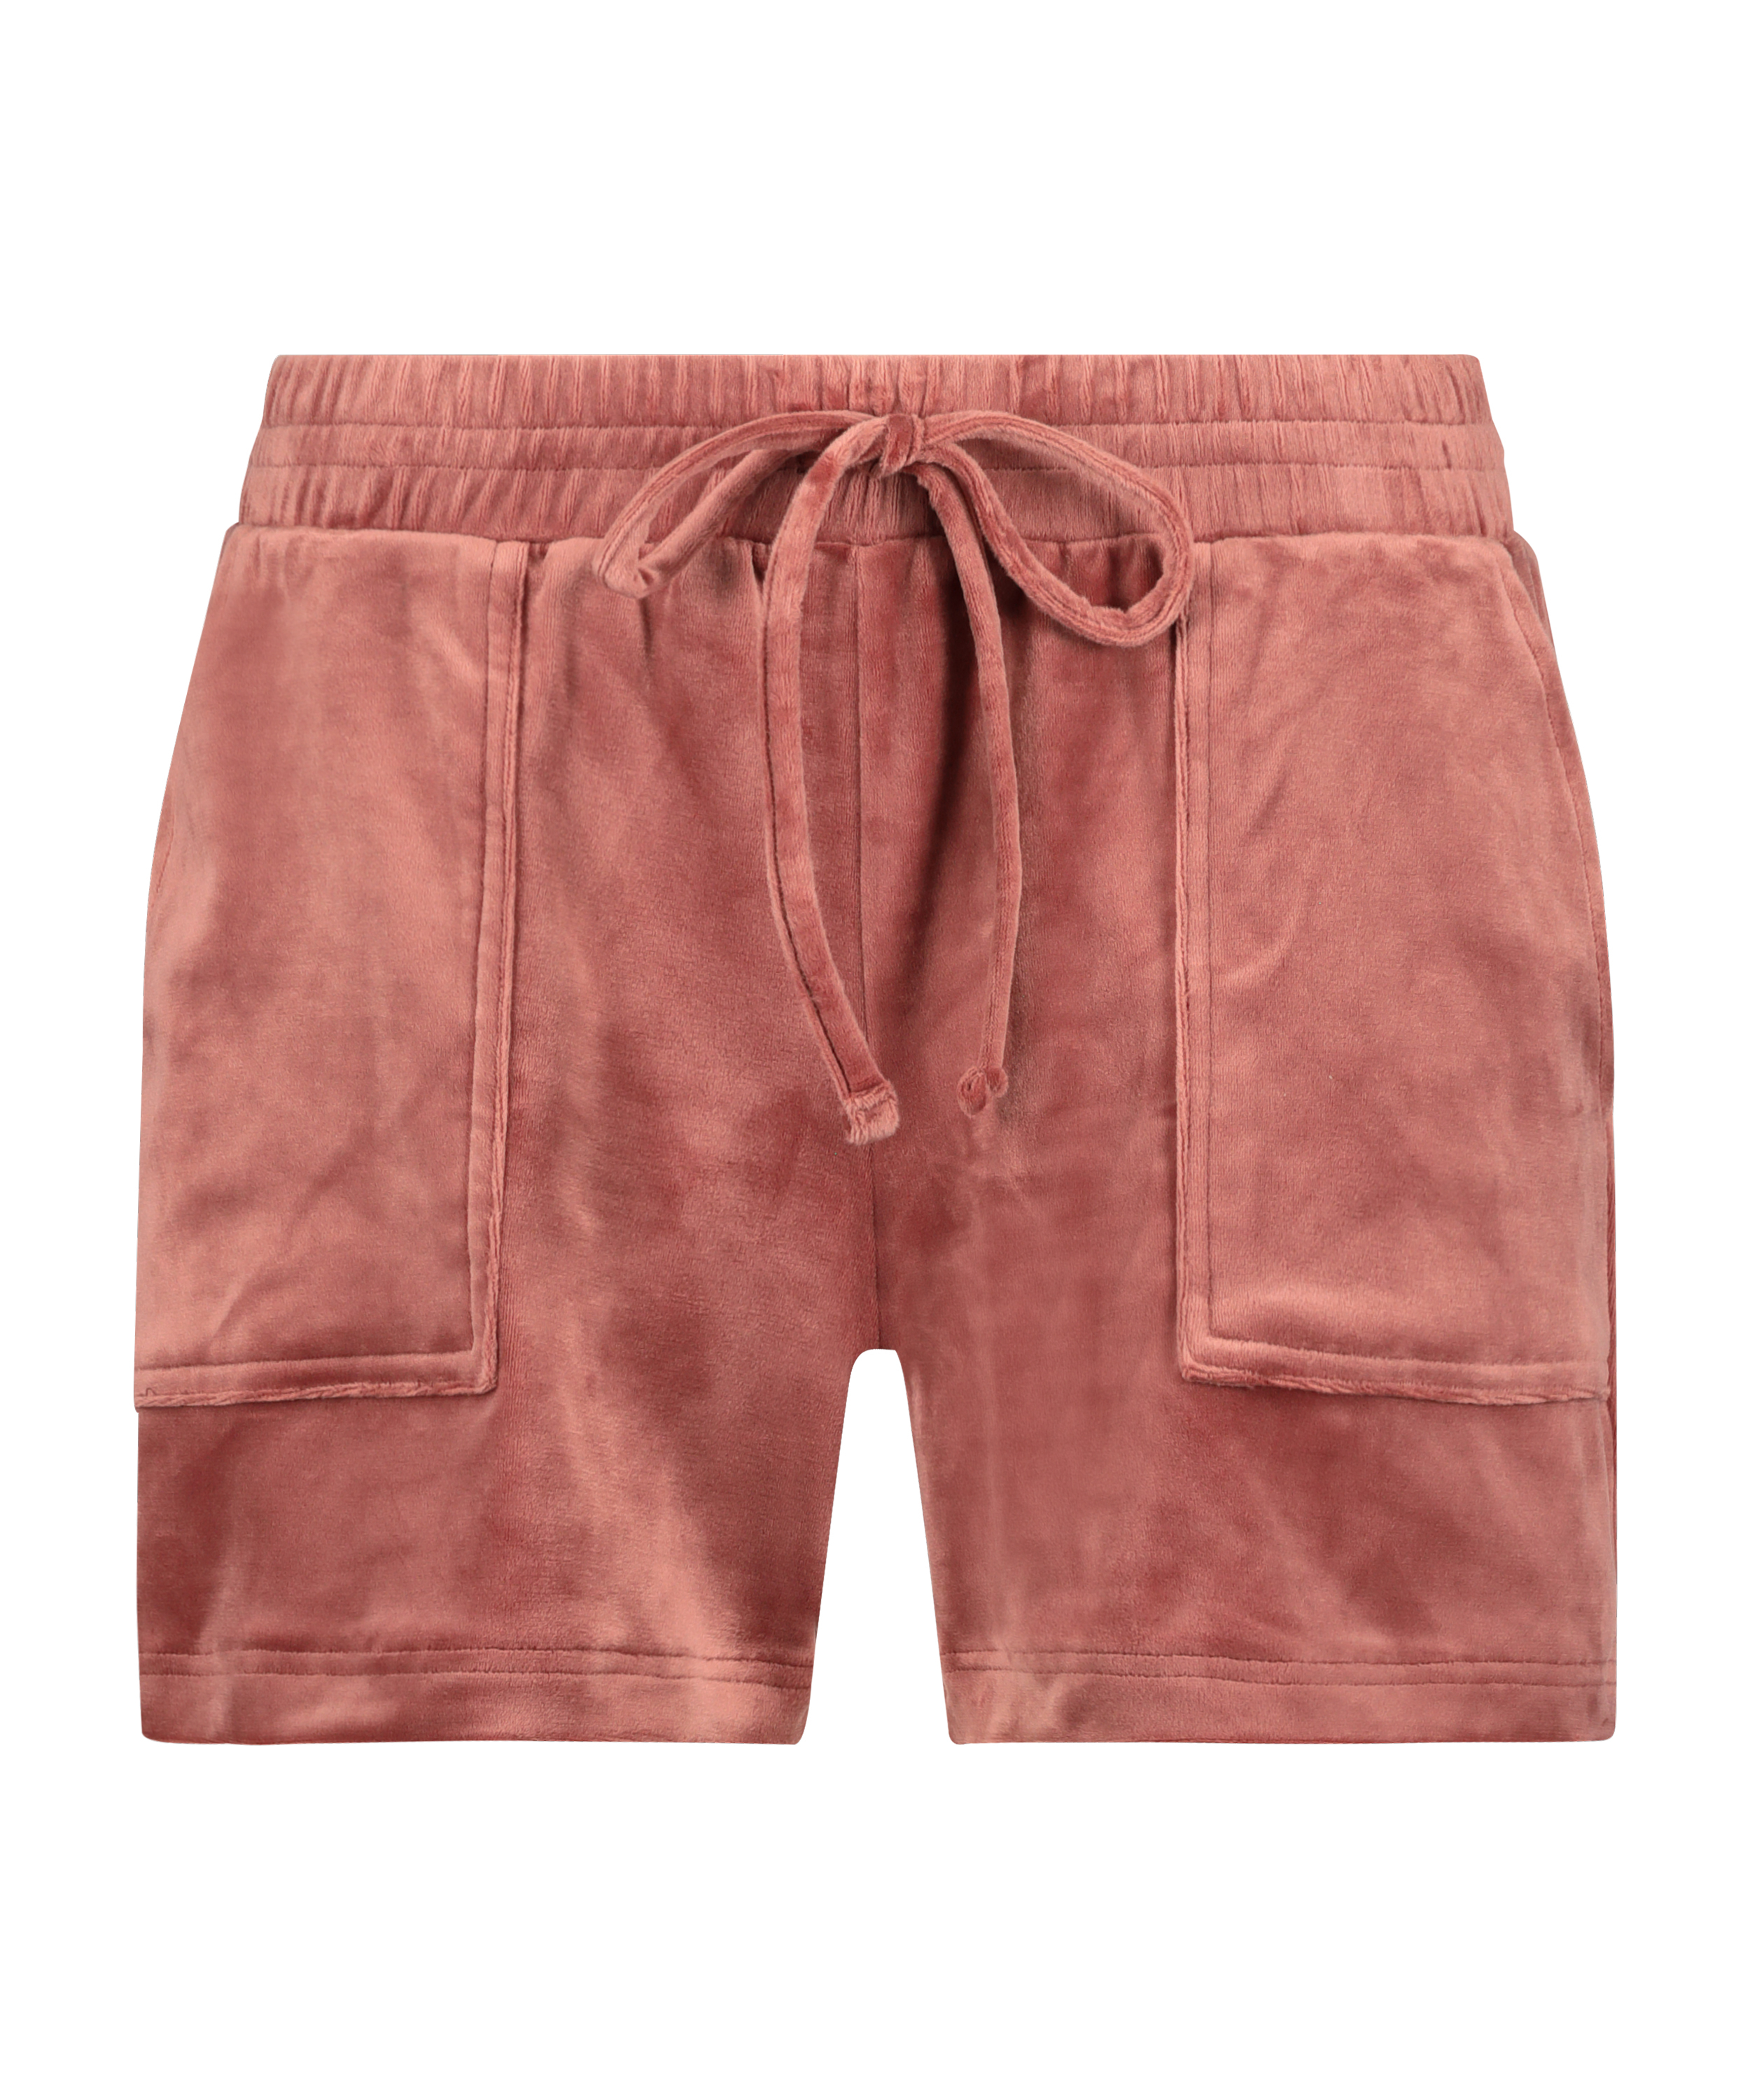 Velvet Pocket shorts, Pink, main